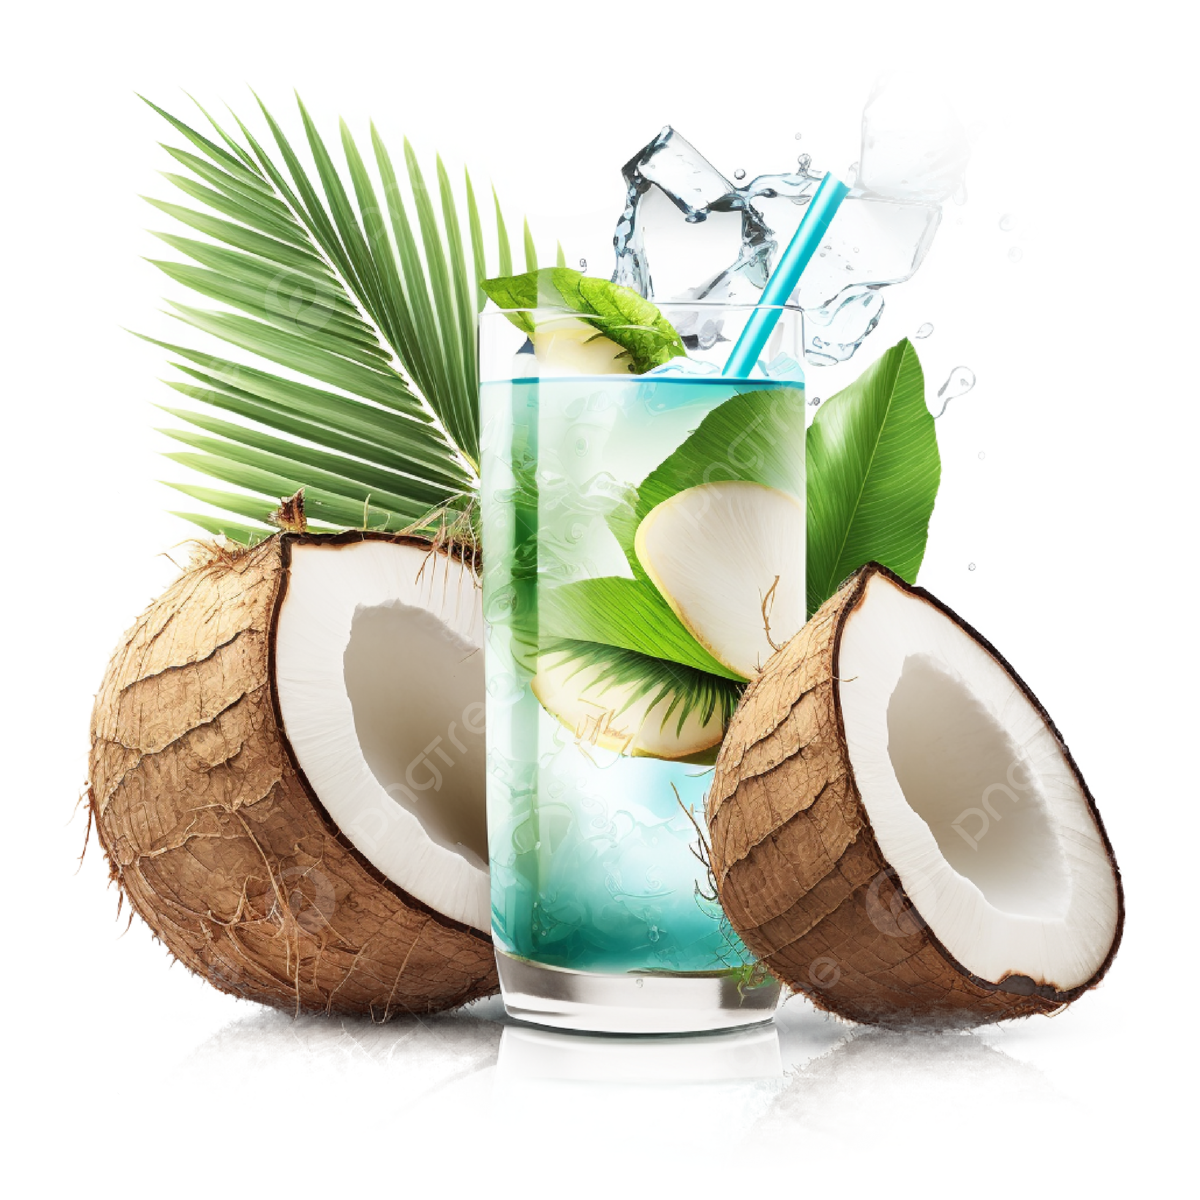 Belize tylko kokosowa woda picia postpartum testosterone wiedza